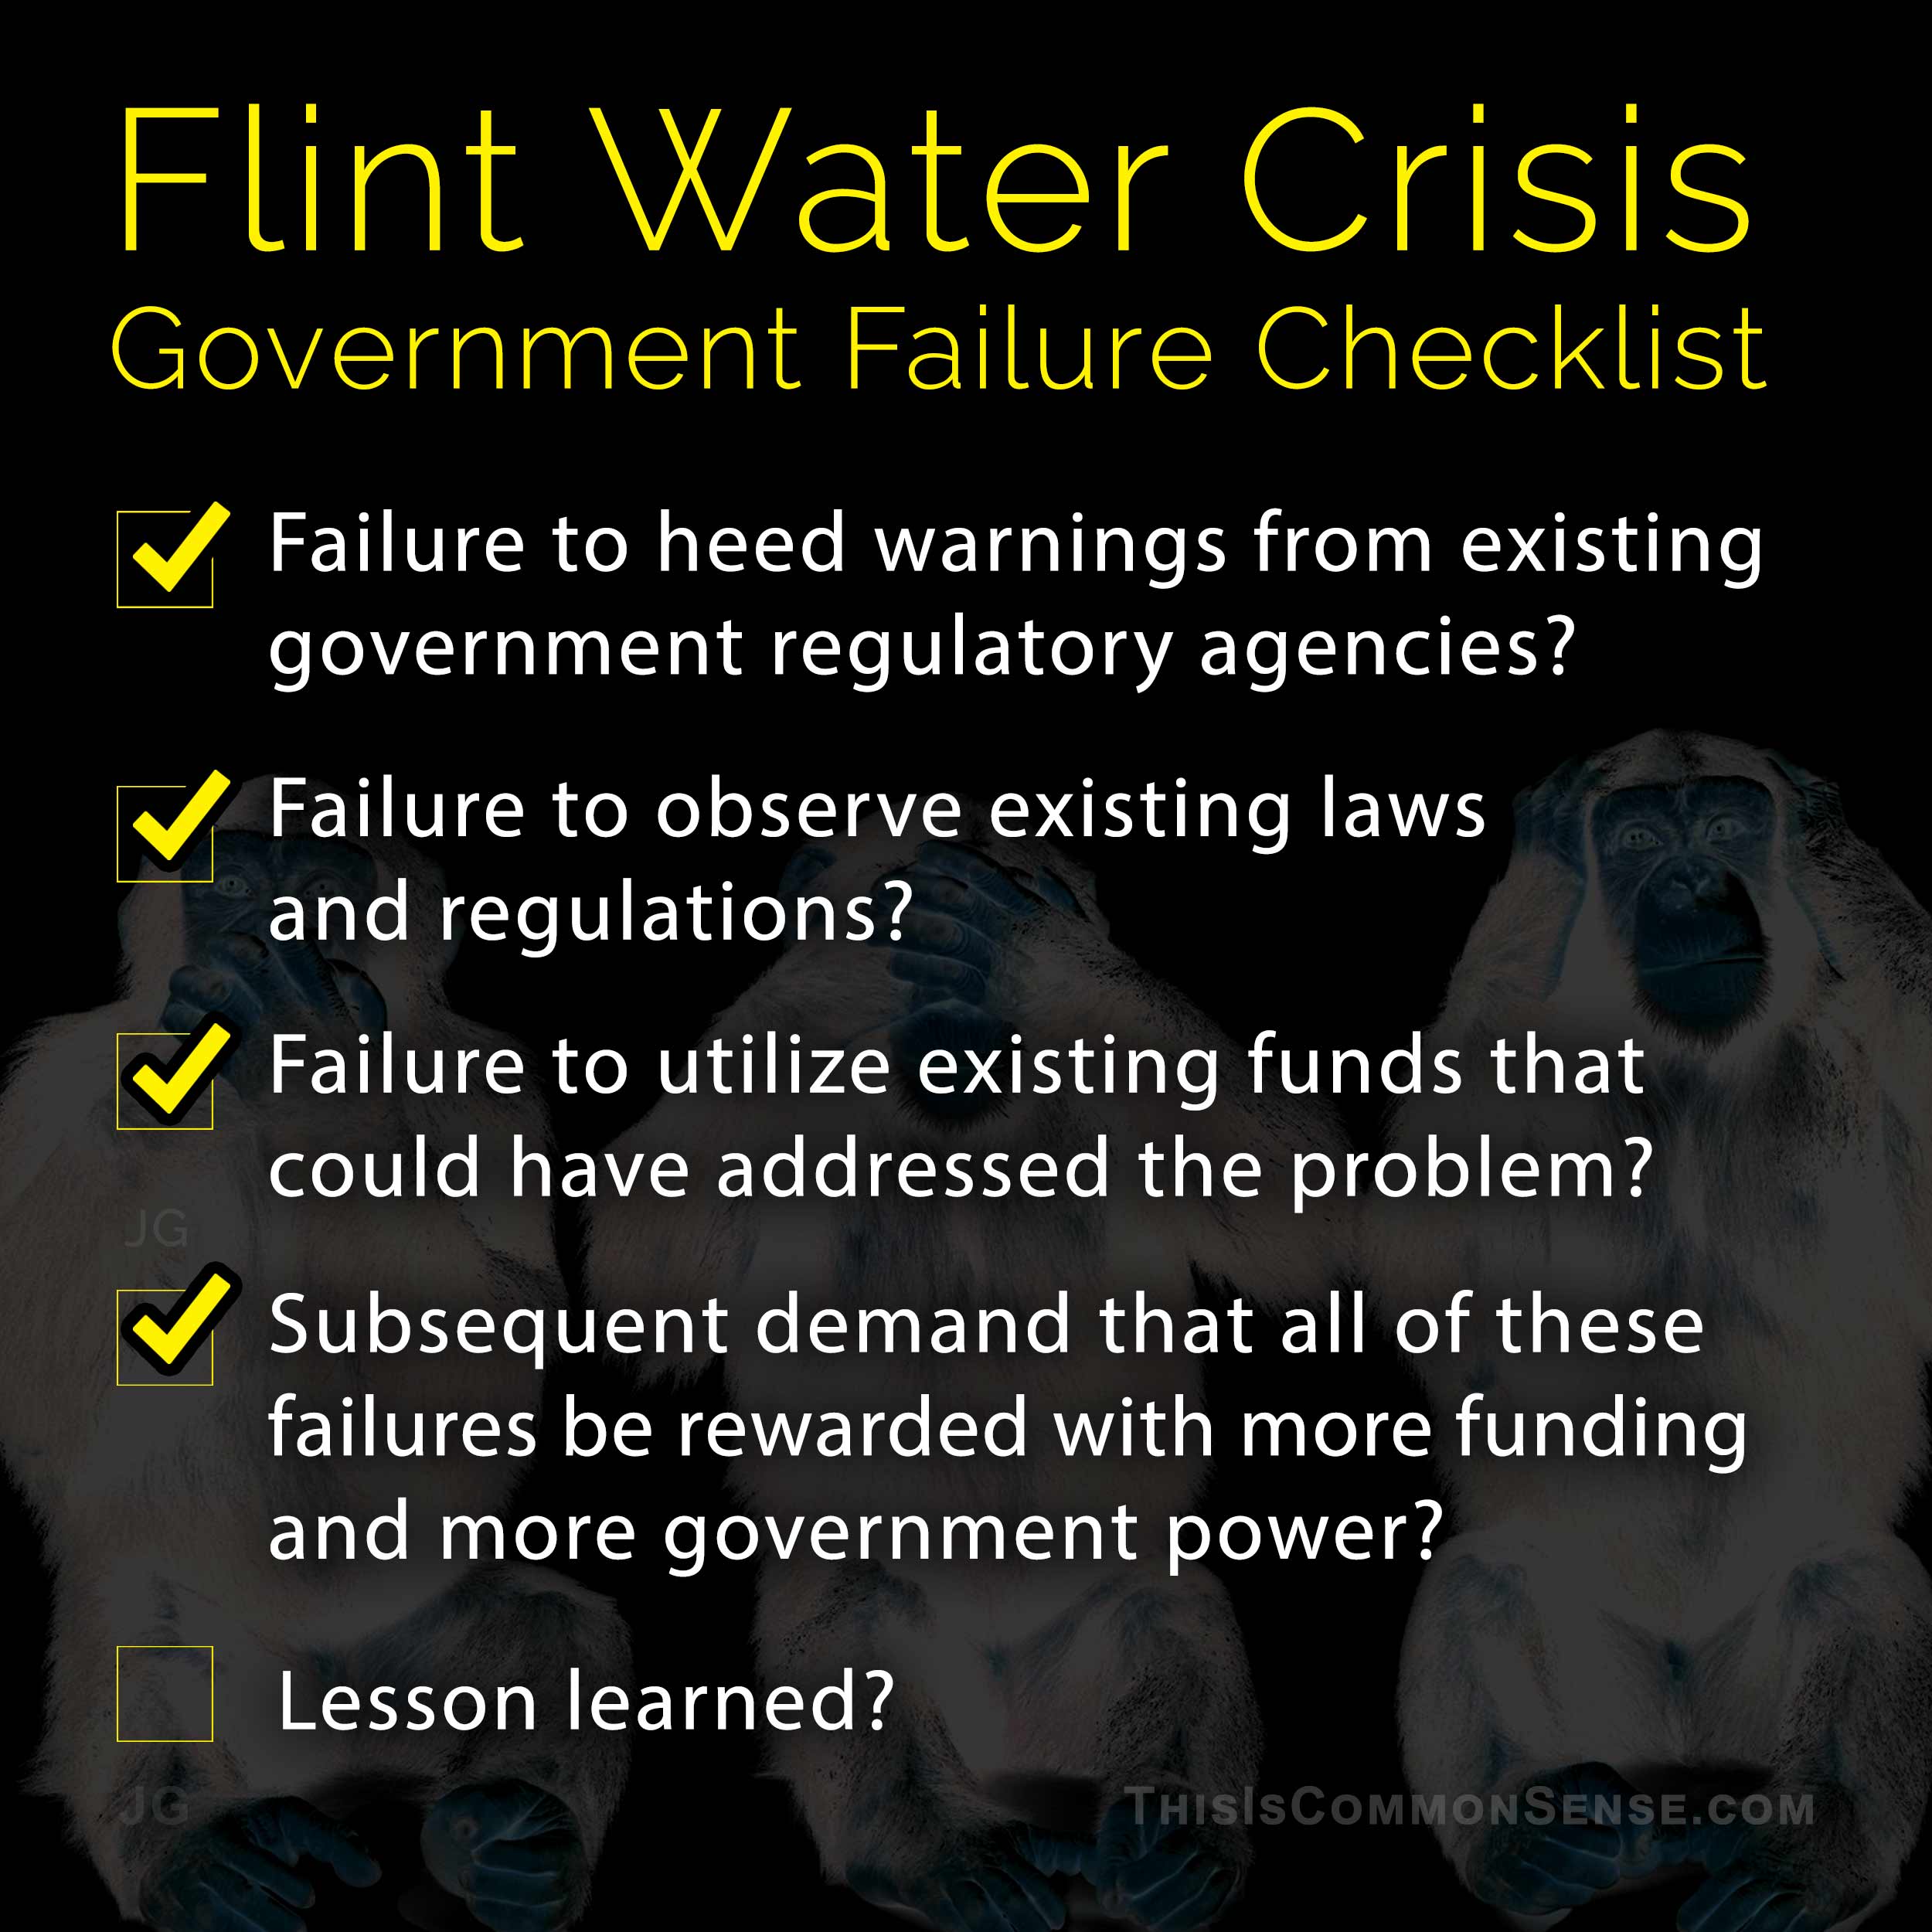 Flint, water, crisis, poison, government, free market, austerity, failure, Common Sense, Meme, James Gill, Paul Jacob